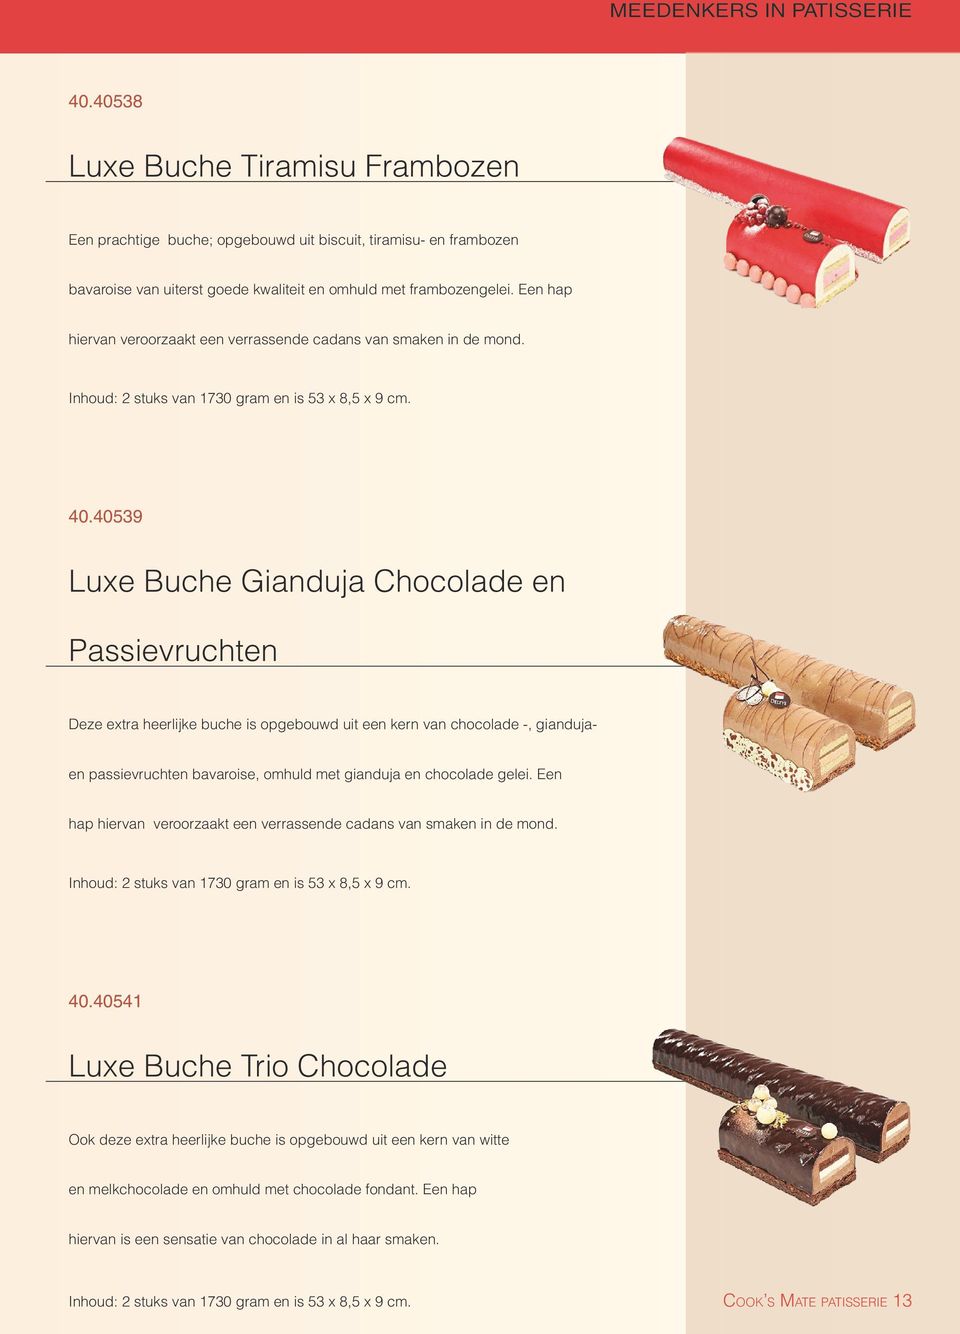 40539 Luxe Buche Gianduja Chocolade en Passievruchten Deze extra heerlijke buche is opgebouwd uit een kern van chocolade -, gianduja- en passievruchten bavaroise, omhuld met gianduja en chocolade